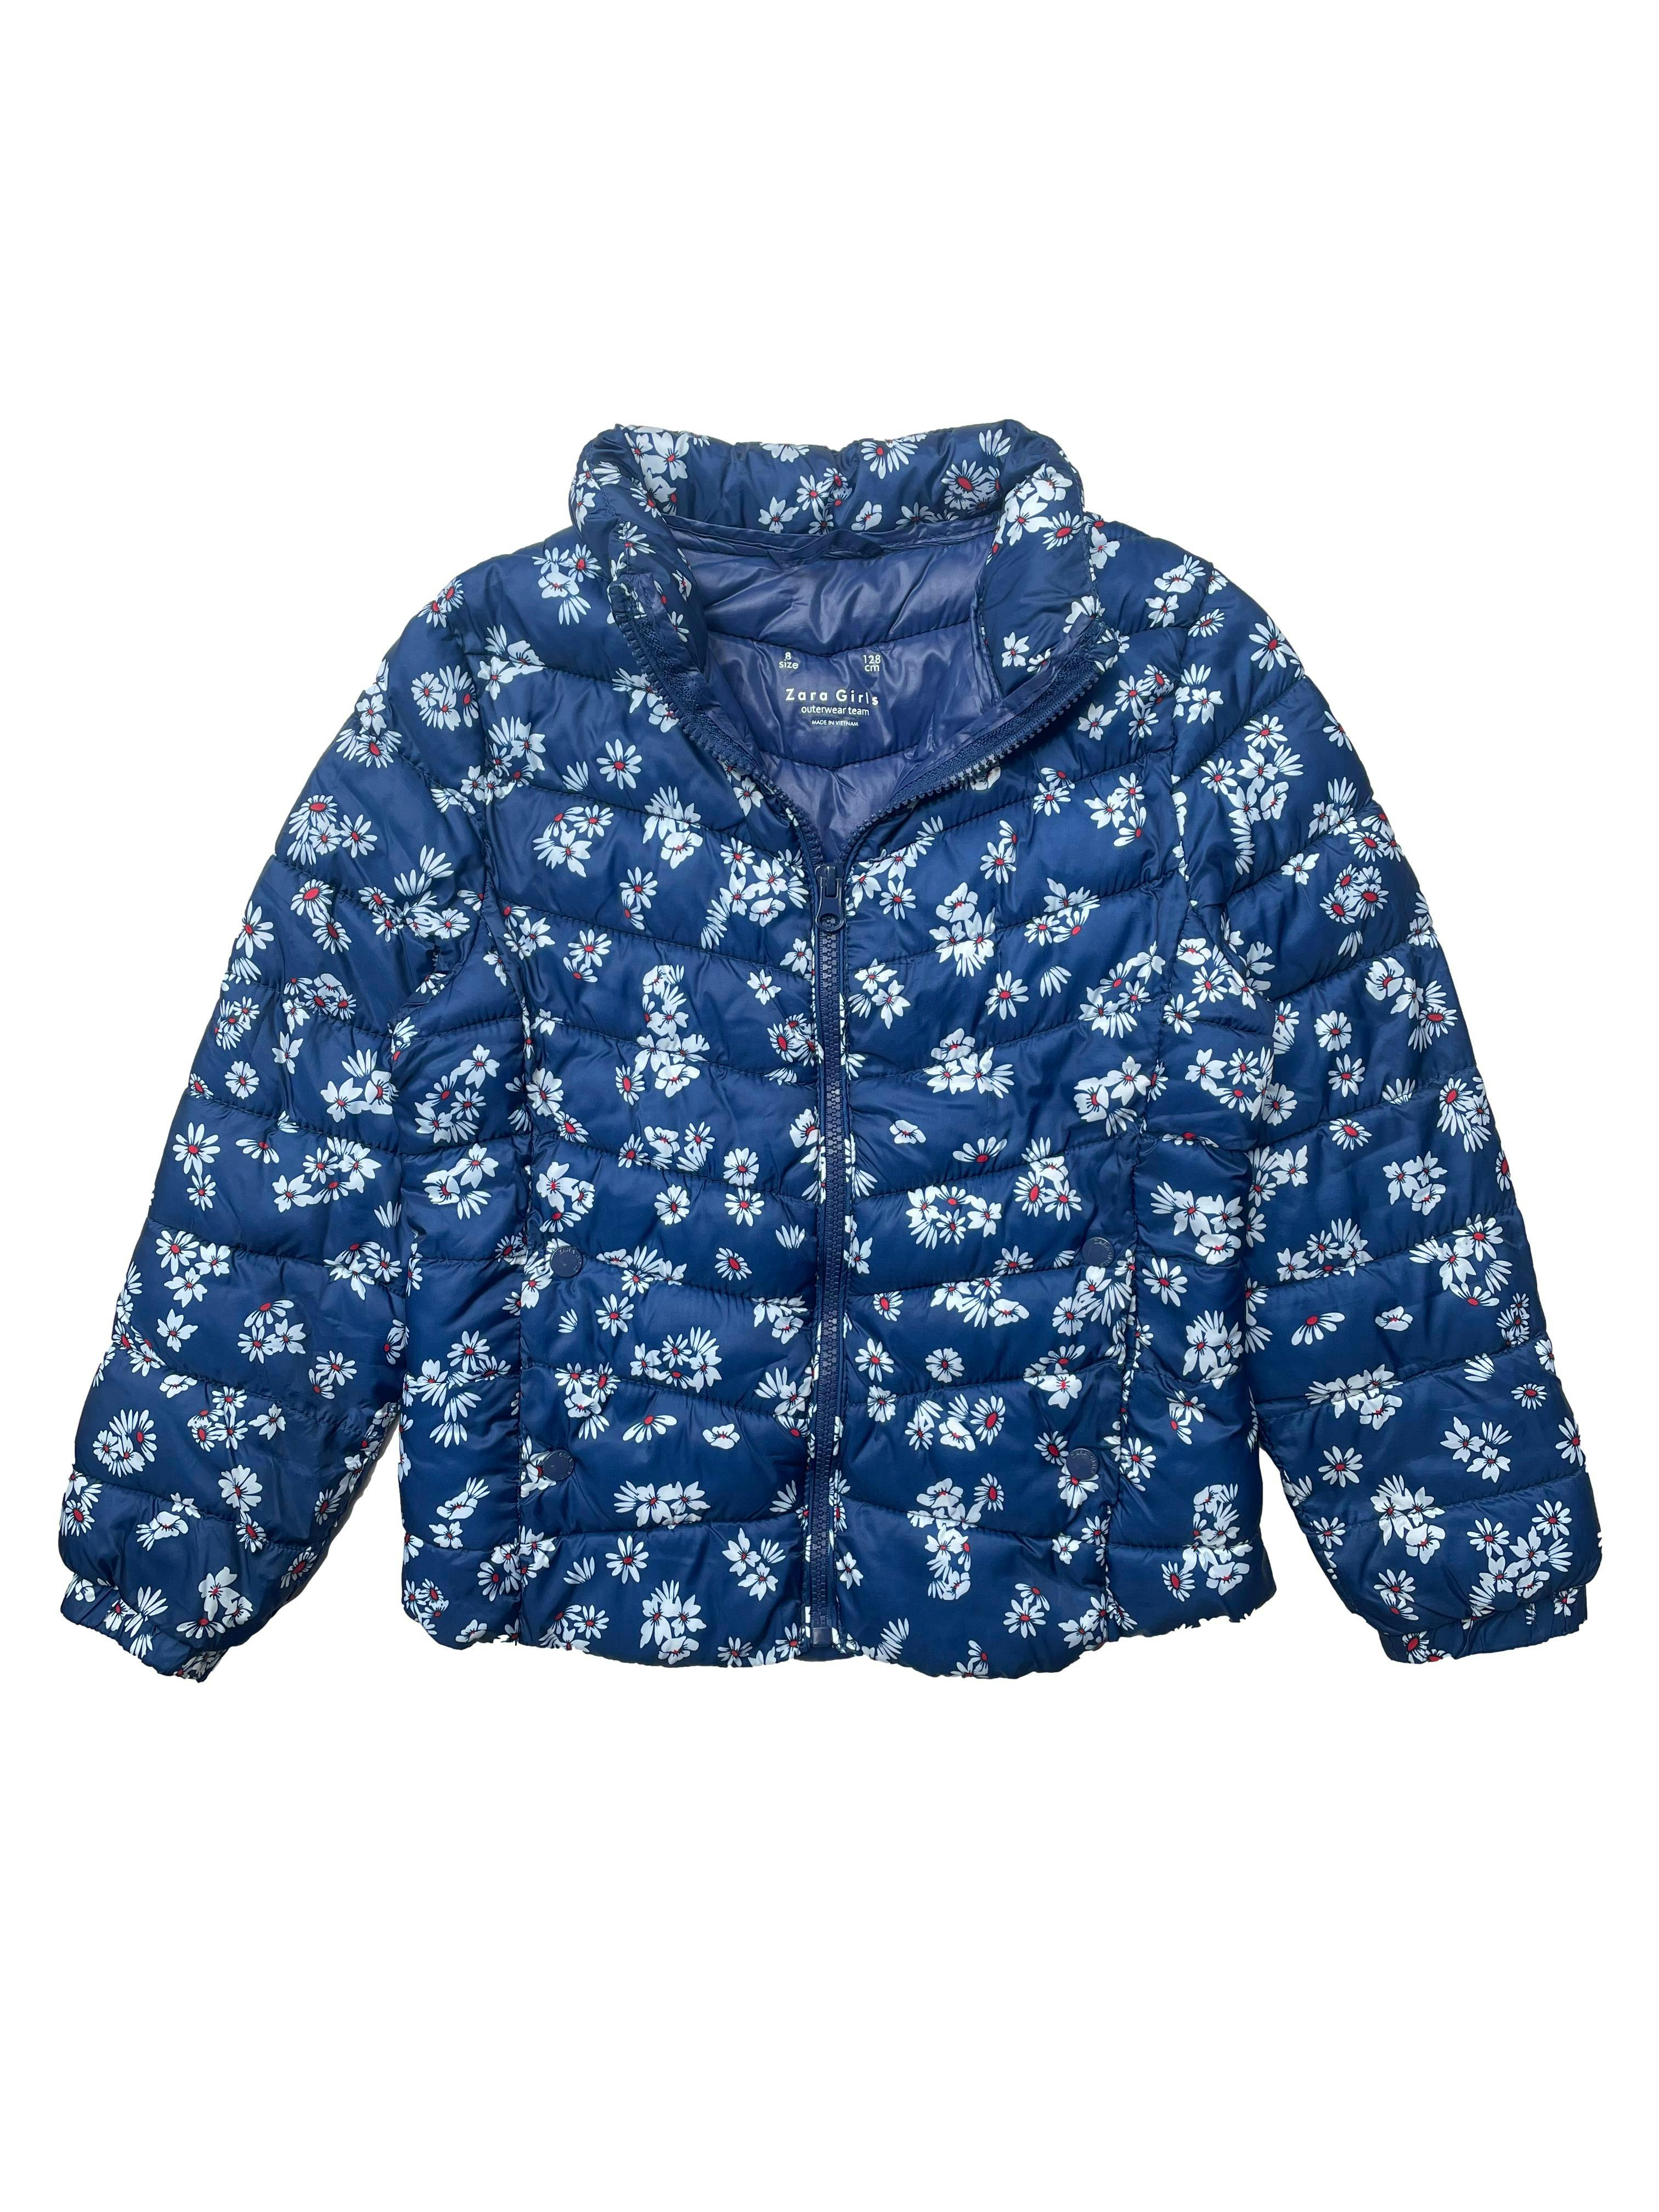 Casaca Zara acolchada azul con flores, bolsillos laterales.